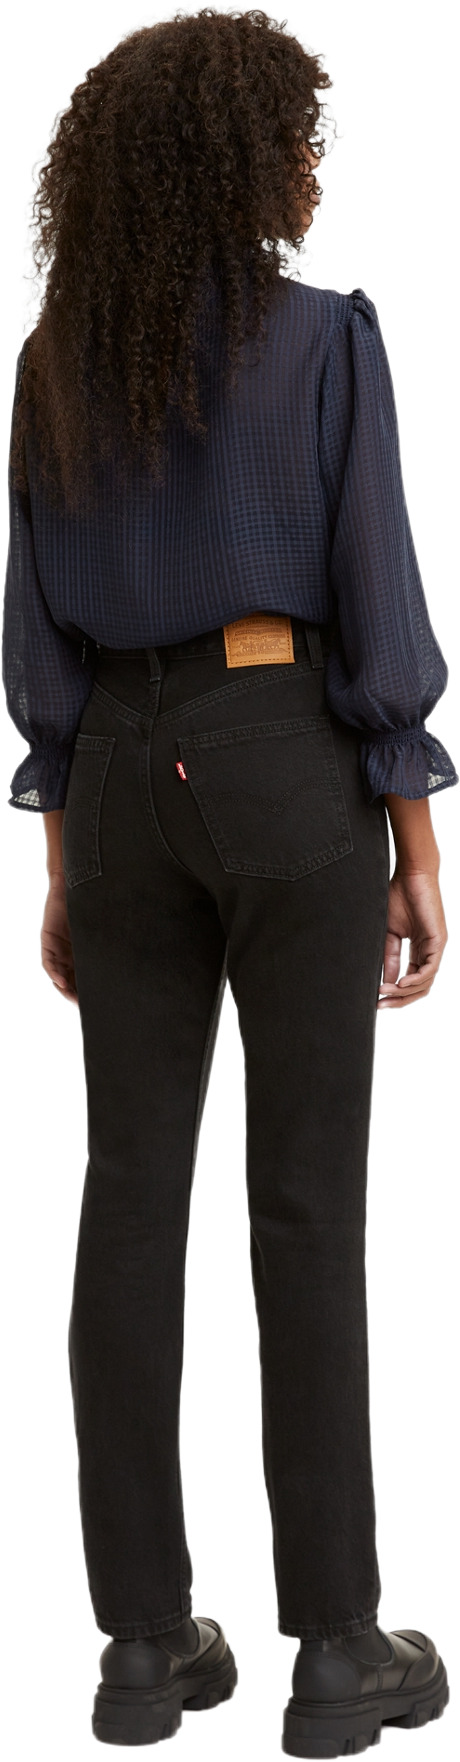 Джинсы Levis Women 70s High Slim Straight Jeans (A0898-0015) купить за  17500 руб. в интернет-магазине JNS